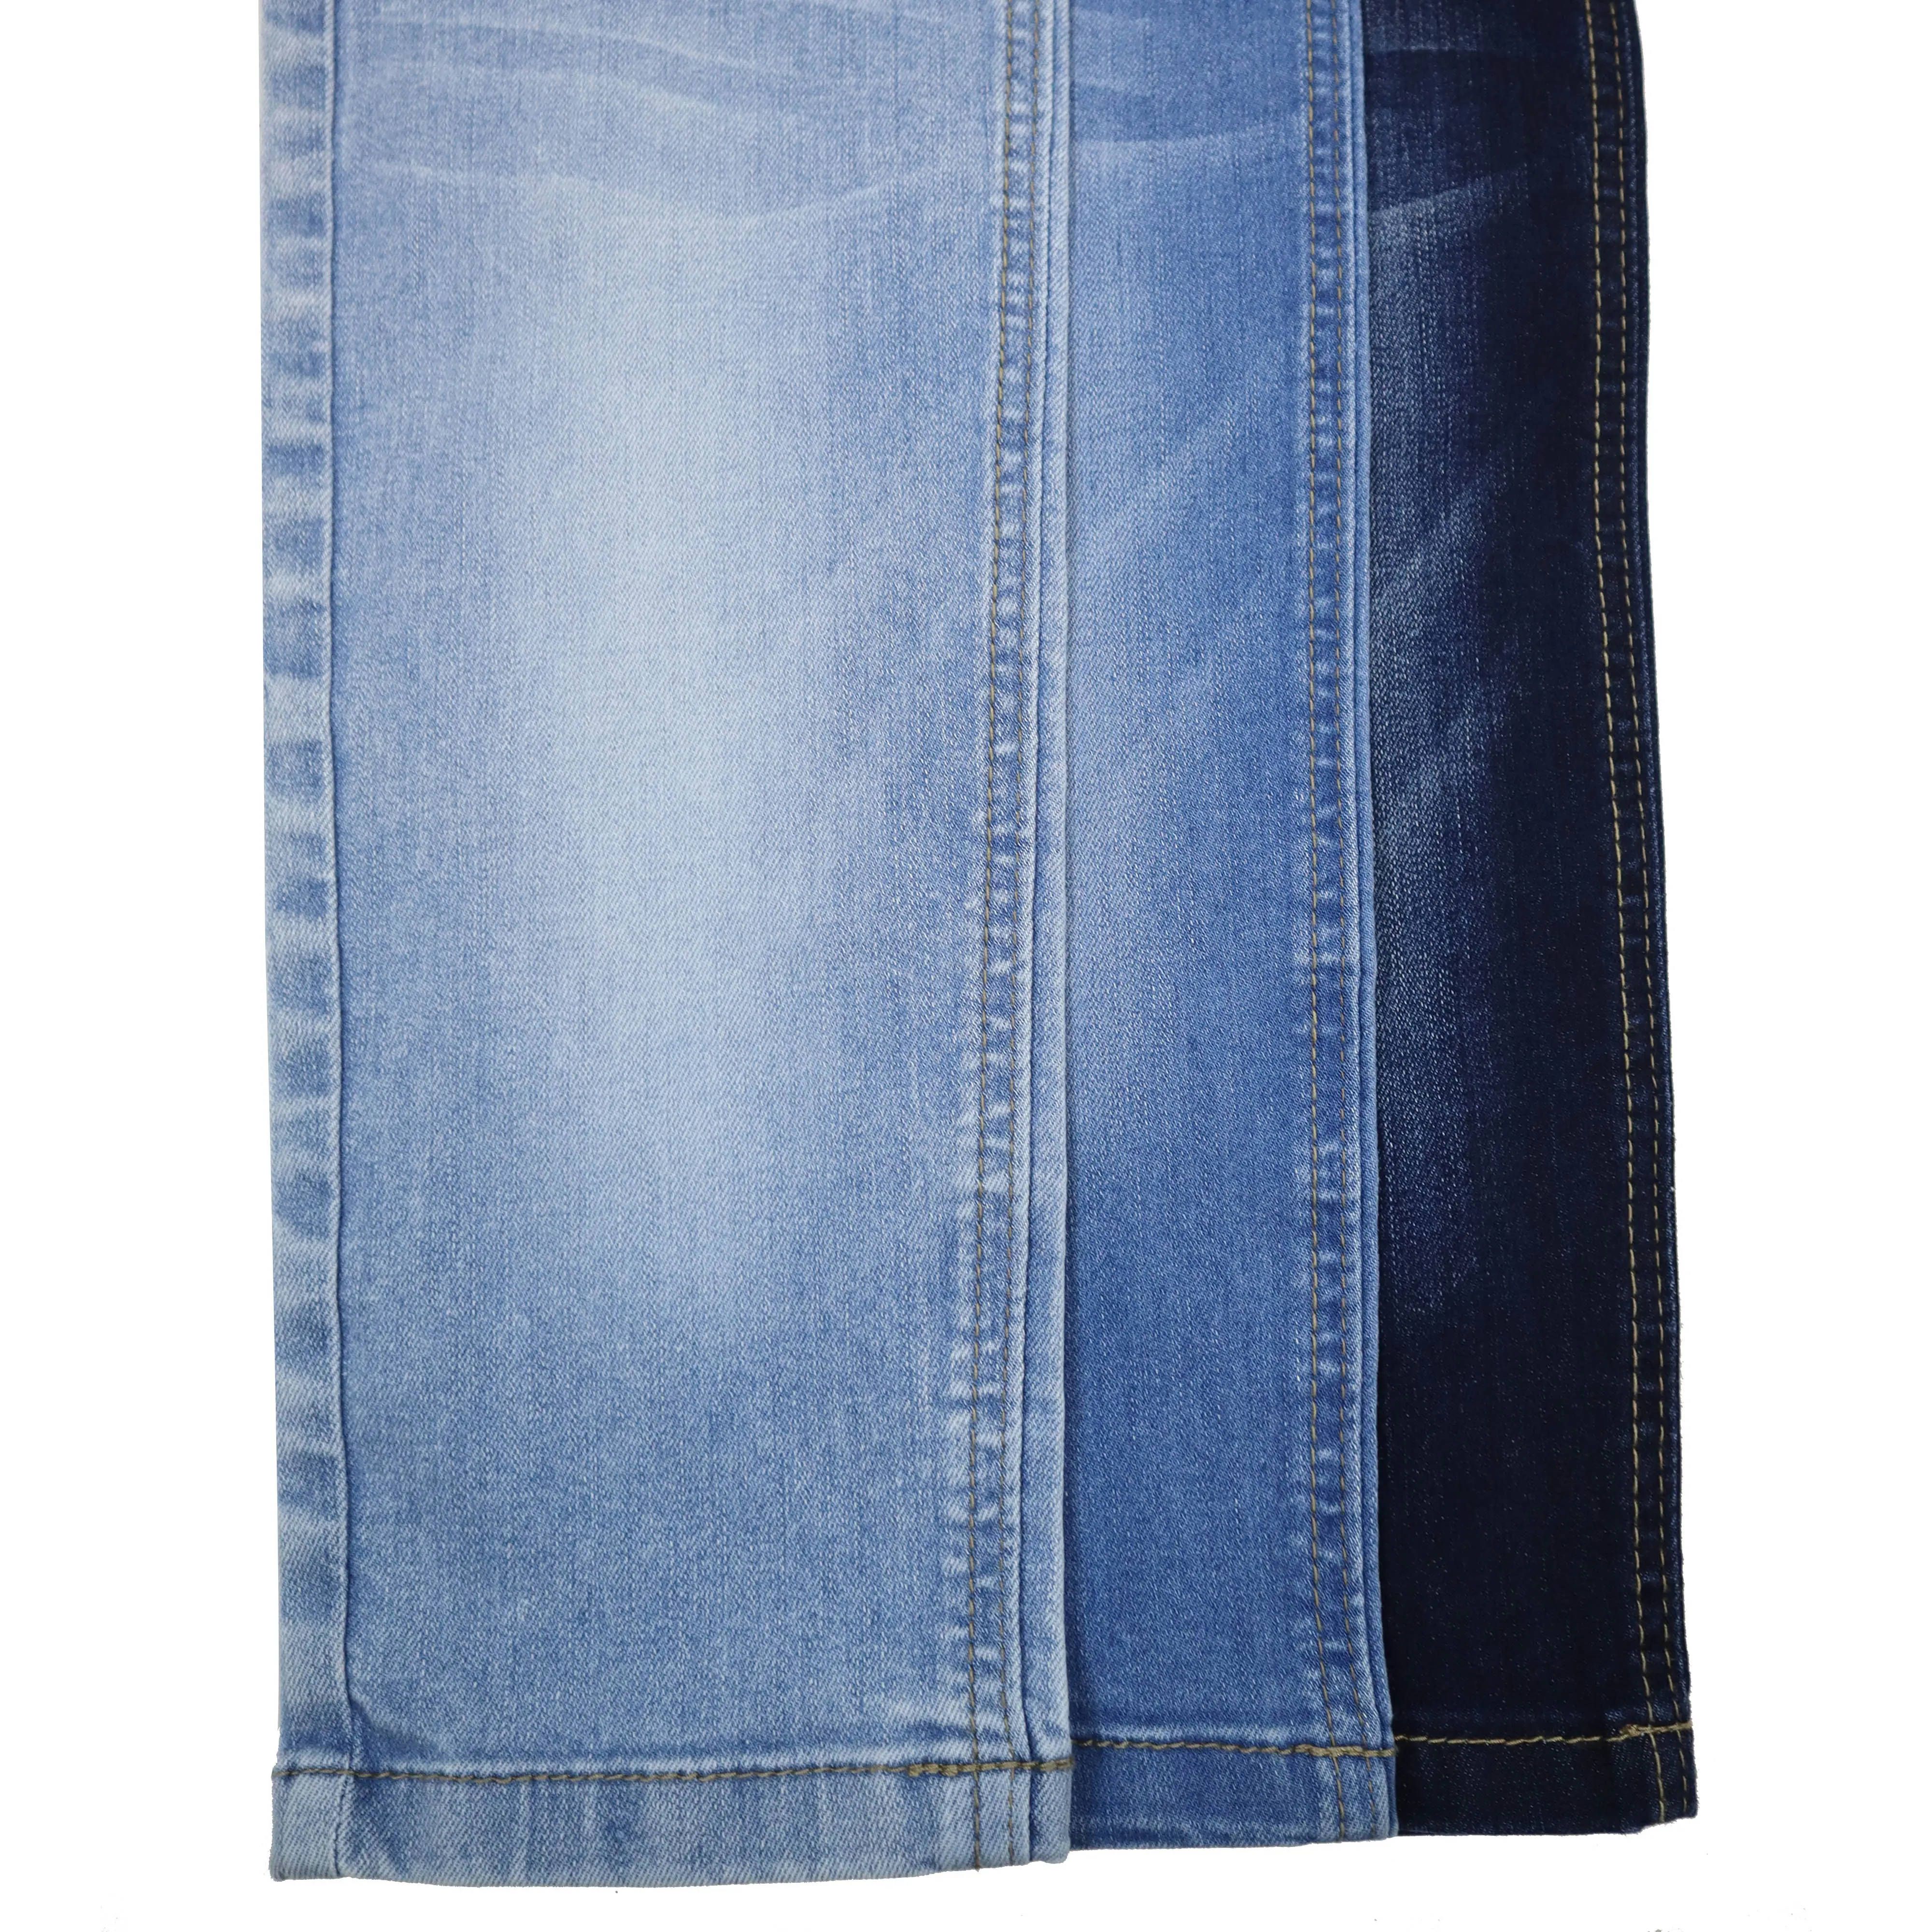 CF-RL823 69% coton 21% repreve polyester 8% rayonne 2% lycra spandex tissage spécial doux coton Stretch Denim tissu Jeans matériaux